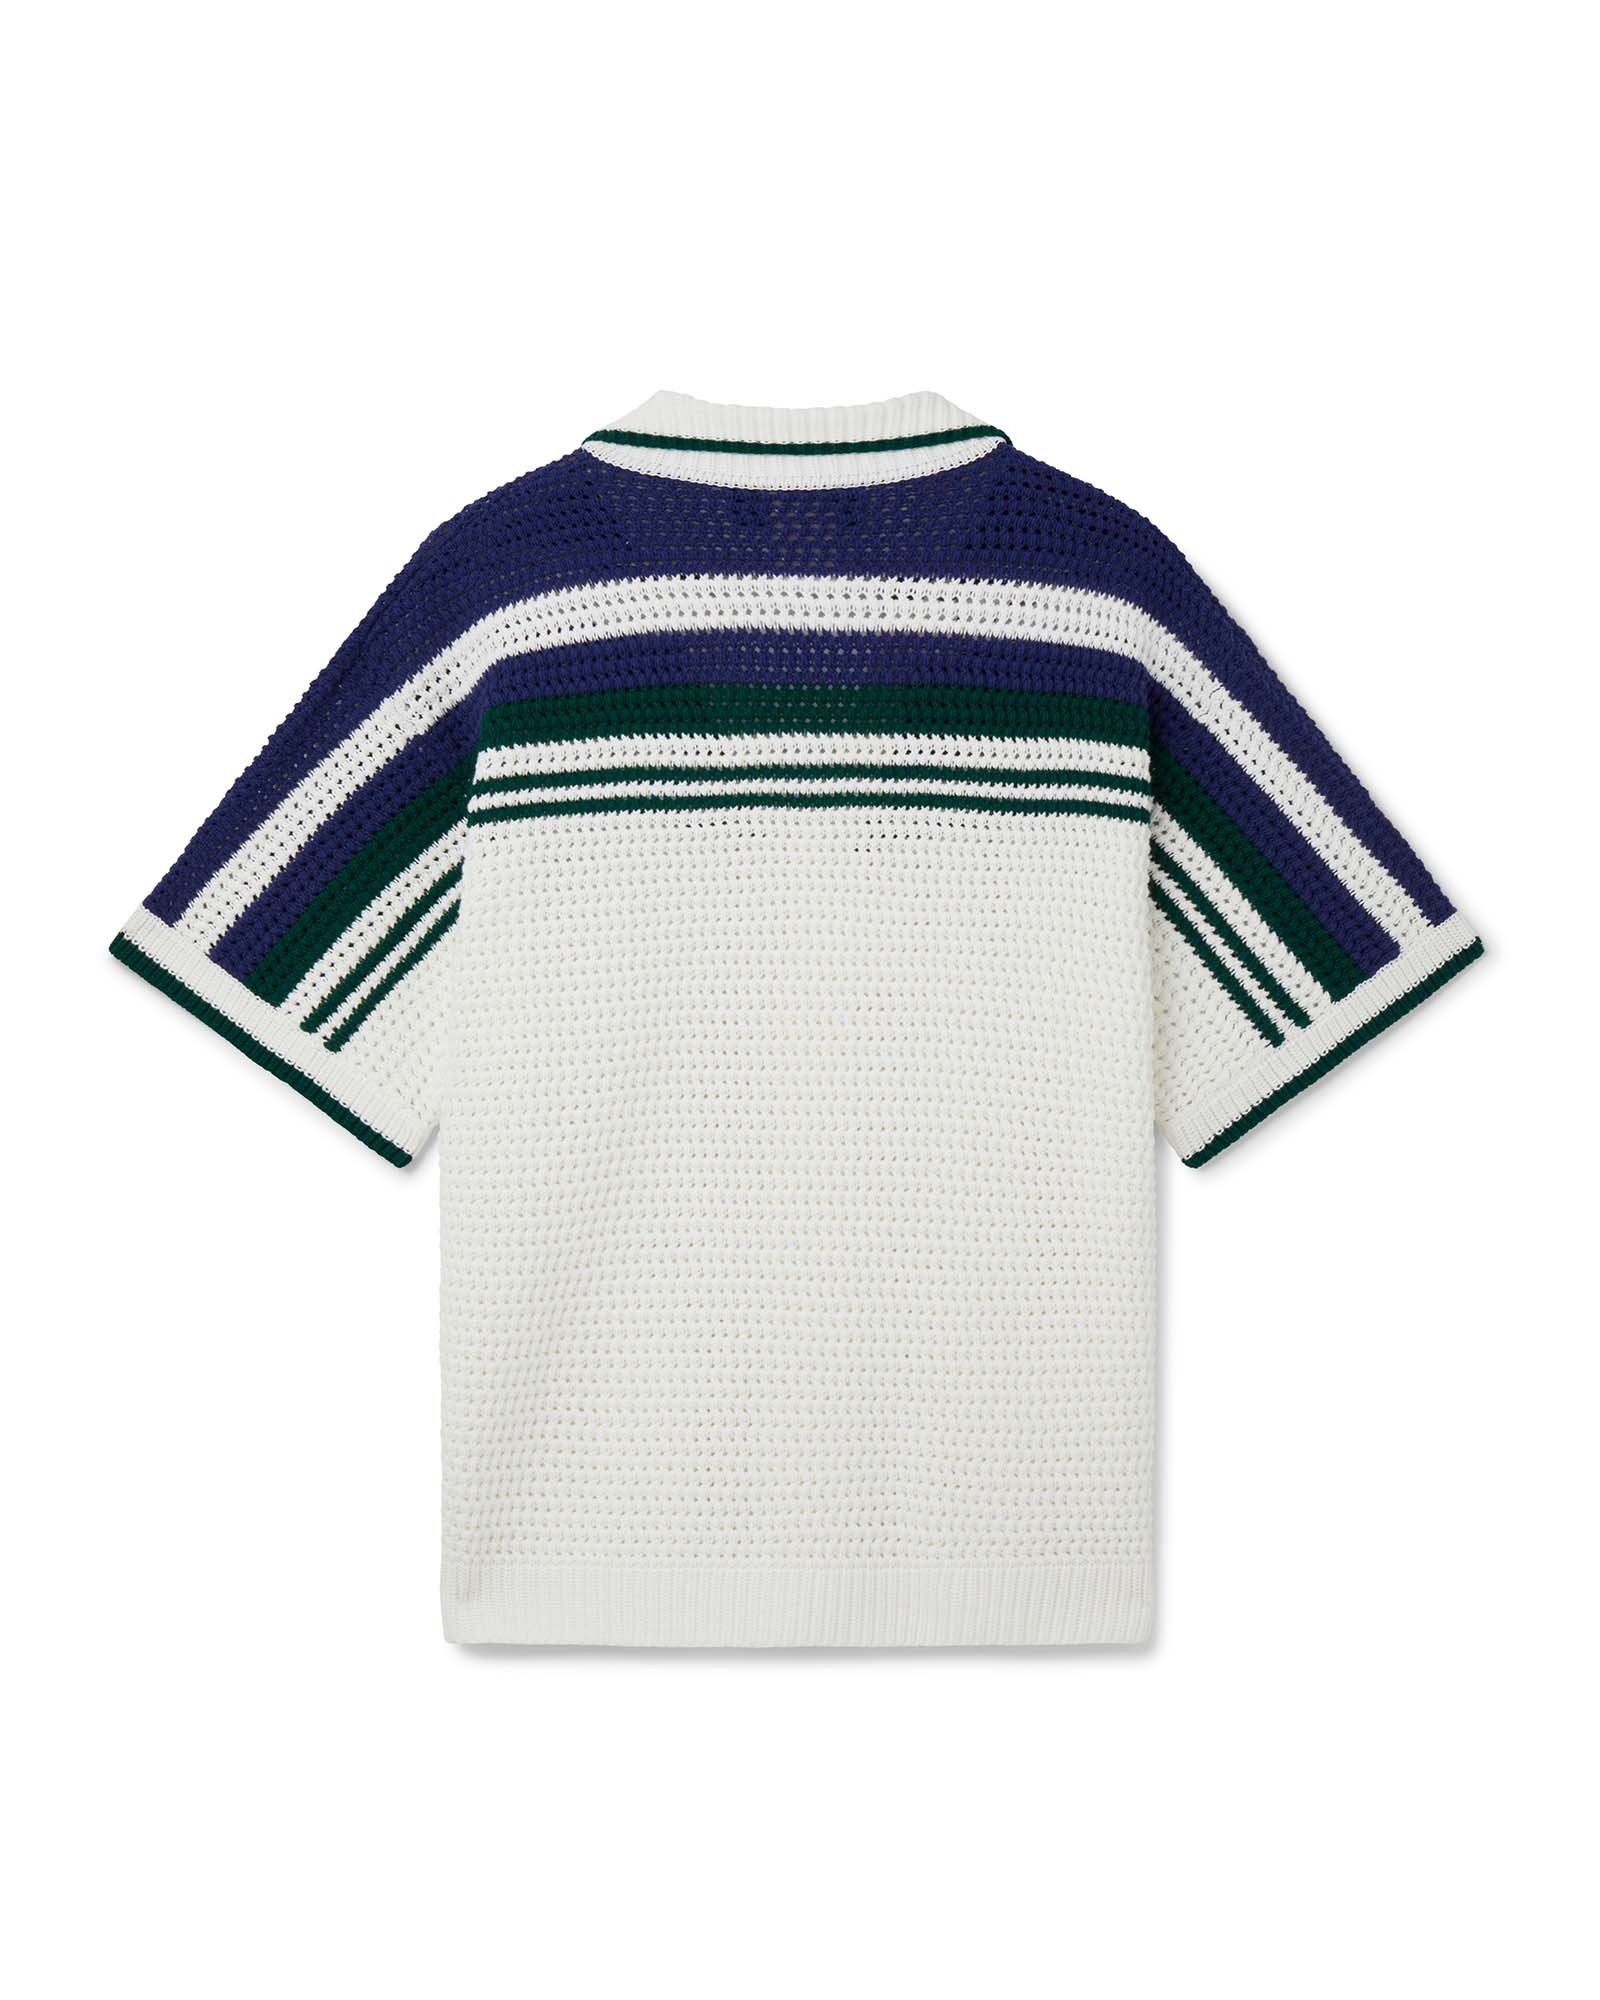 Crochet Tennis Shirt - 6